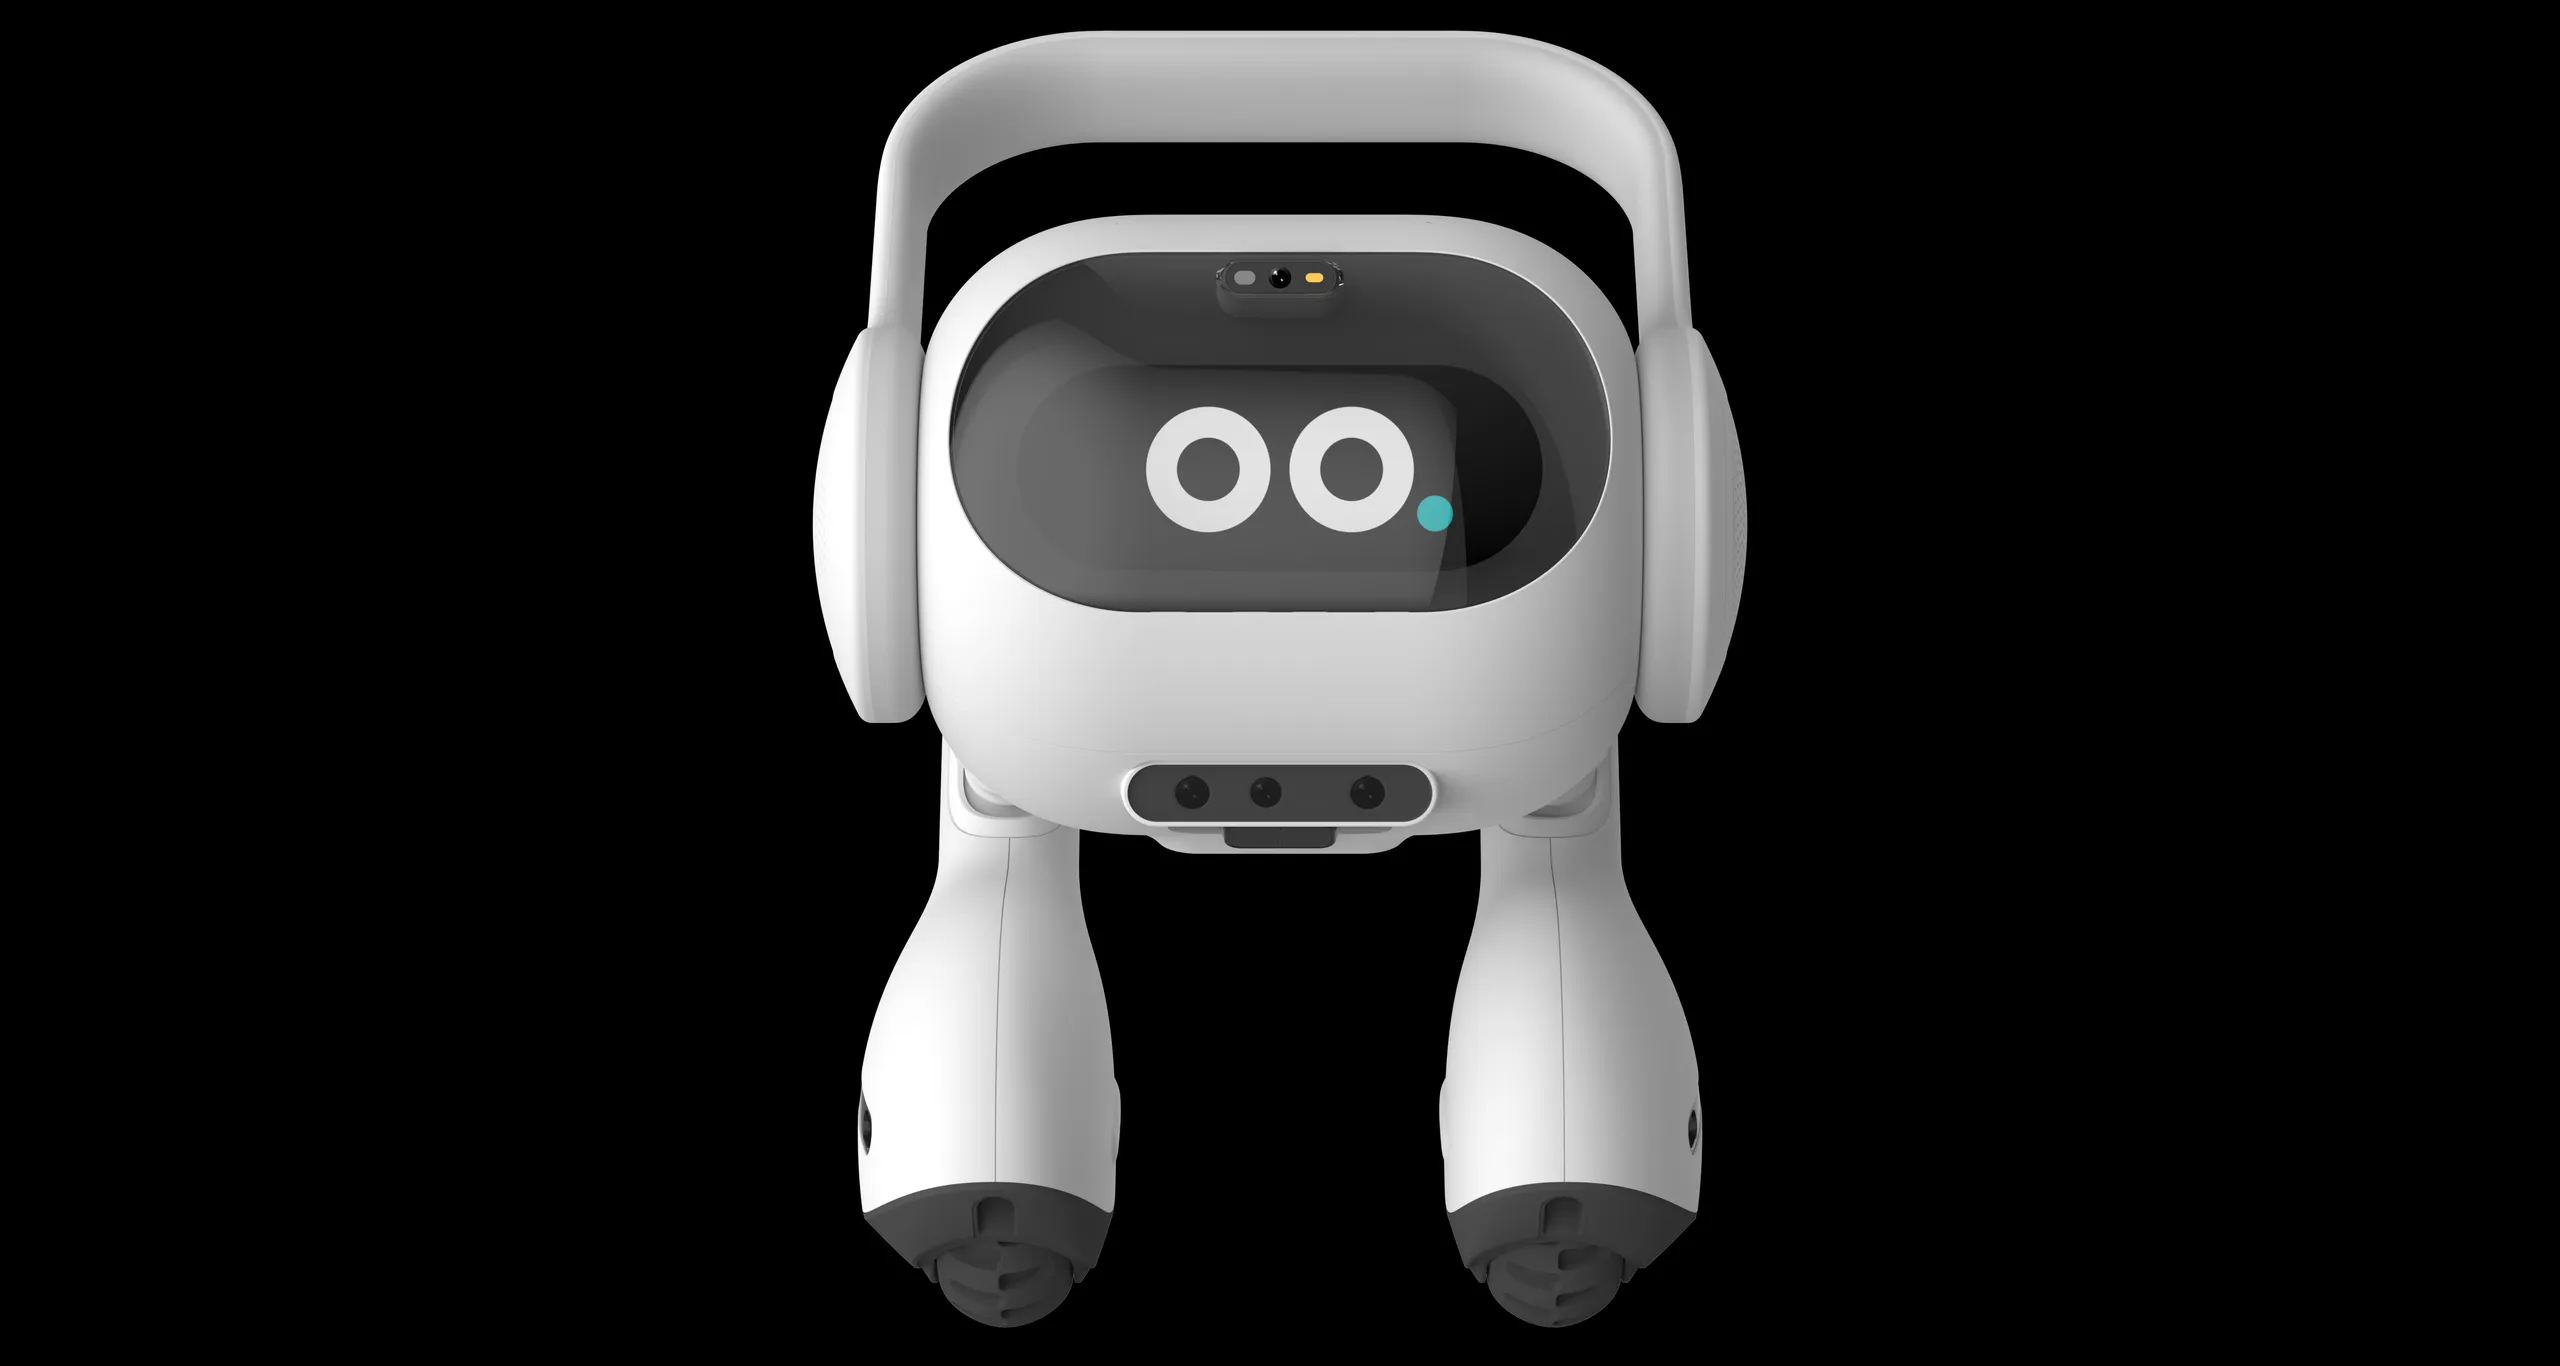 LG Umumkan Robot AI, Bentuk Lucu Unik Punya Dua Kaki dan Pintar